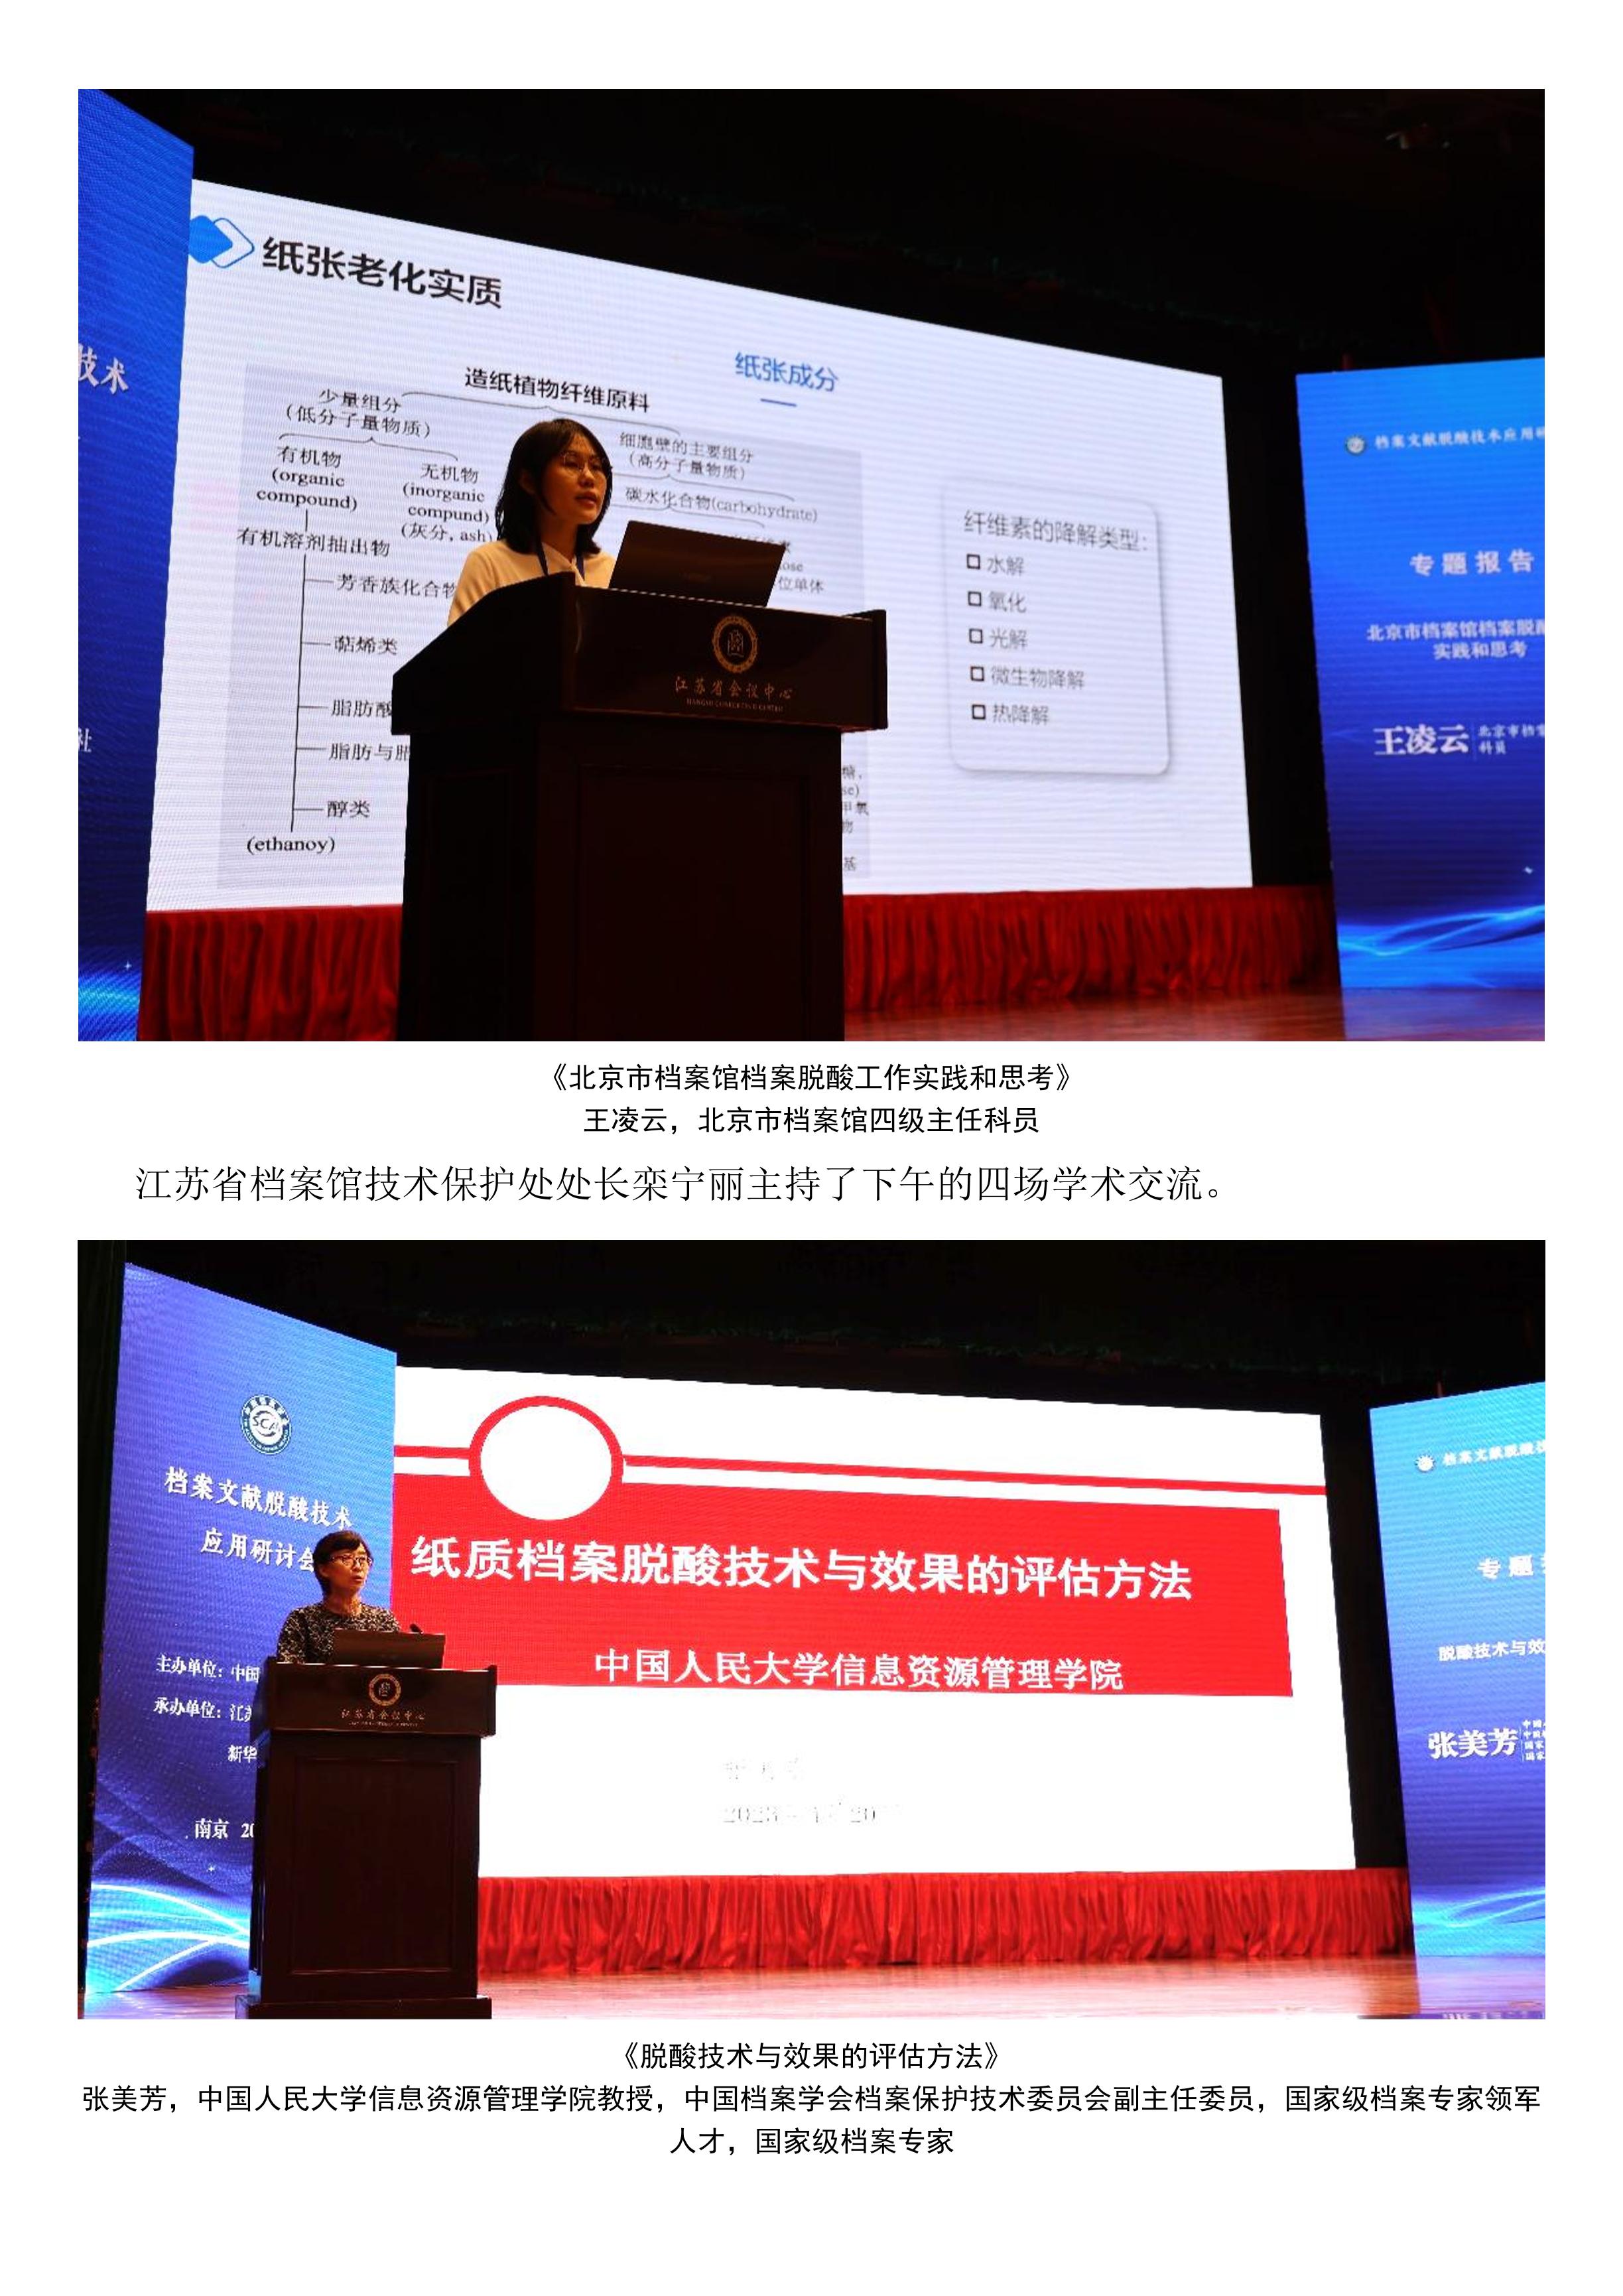 档案文献脱酸技术应用研讨会在南京召开-4